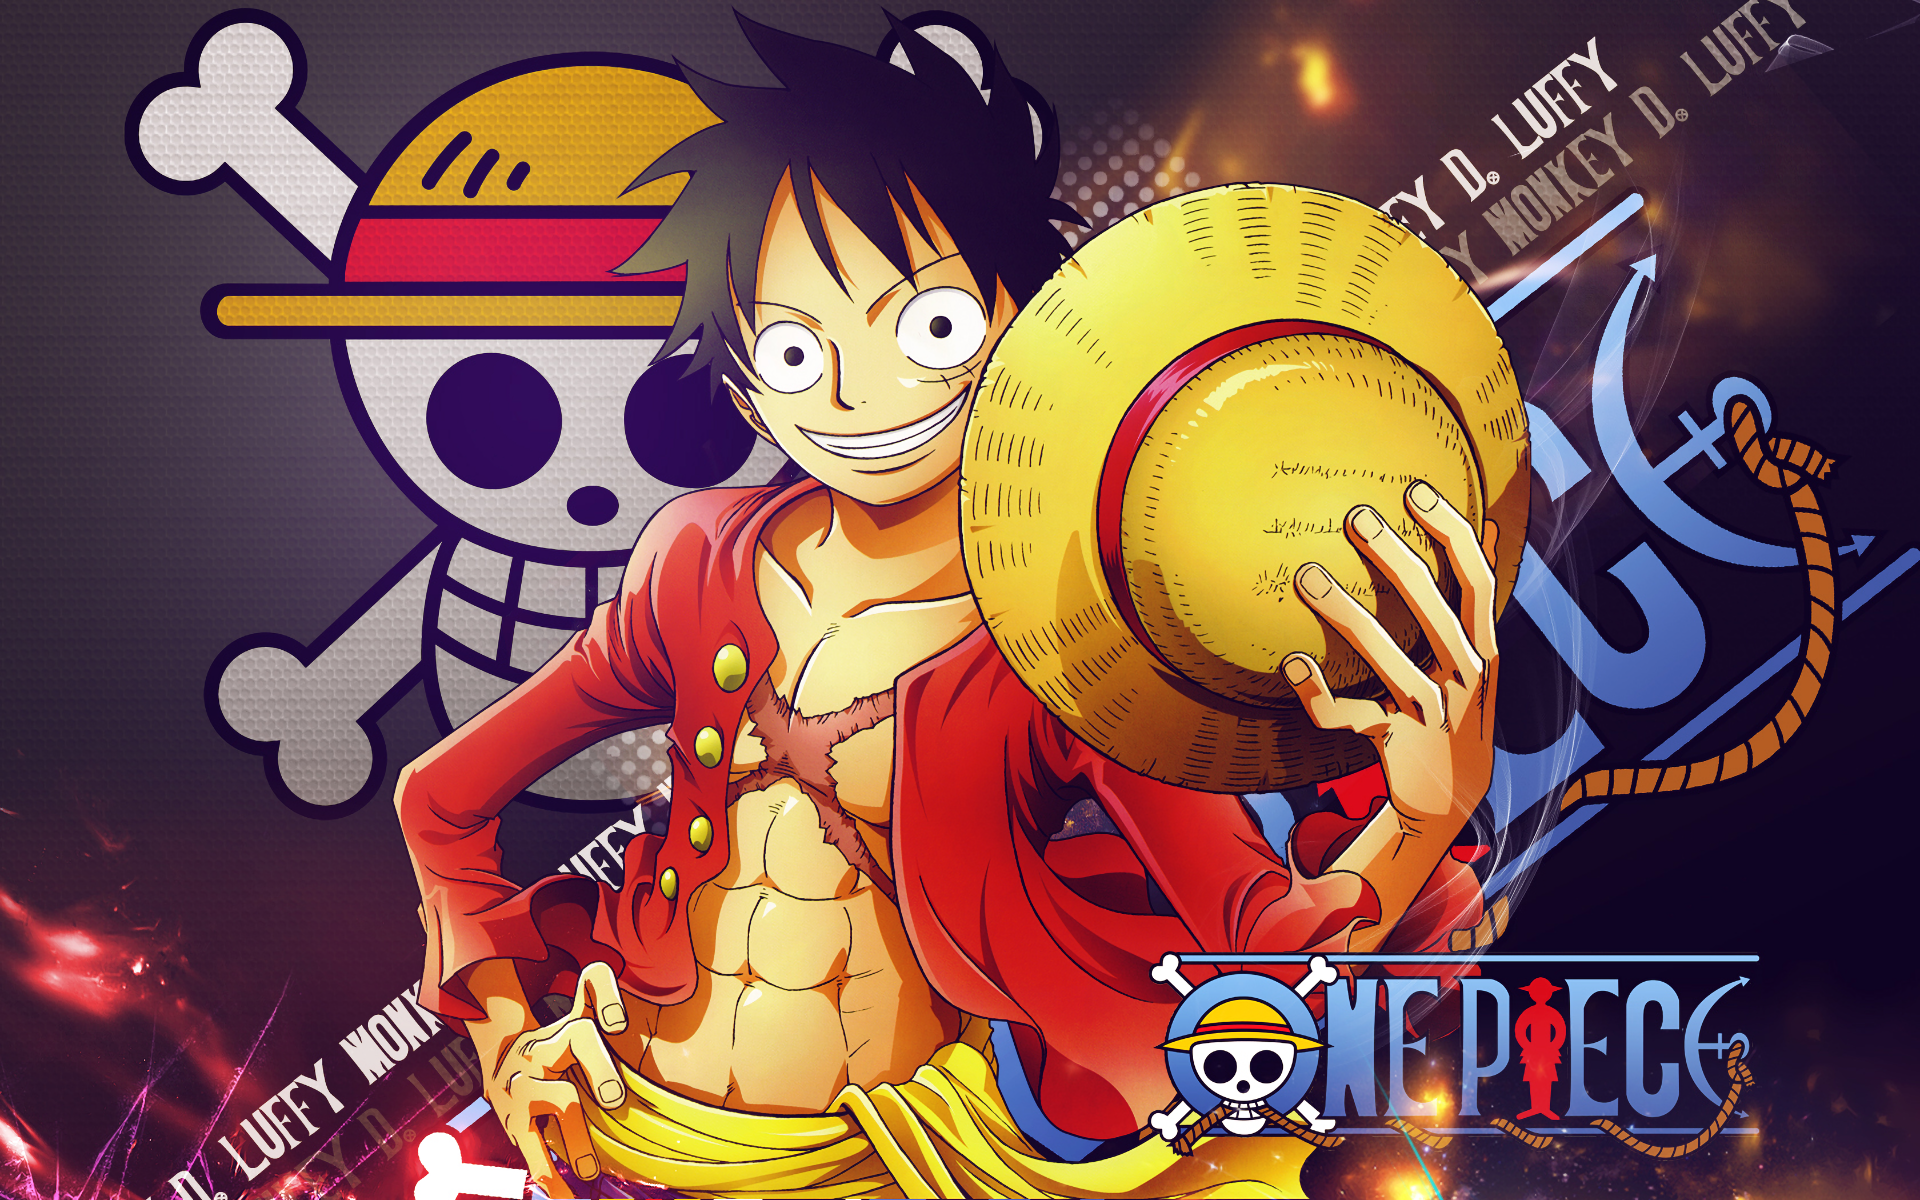 Hình nền Anime One Piece HD: Không chỉ lấy đề tài hải tặc, phiêu lưu mạo hiểm thì anime One Piece còn được yêu thích vì đồ họa tuyệt đẹp, đặc sắc. Nếu bạn muốn xem những hình nền One Piece đầy đủ về chất lượng và độ phân giải HD, hãy truy cập vào nơi cung cấp hình nền Anime One Piece HD Wallpaper ngay và luôn.